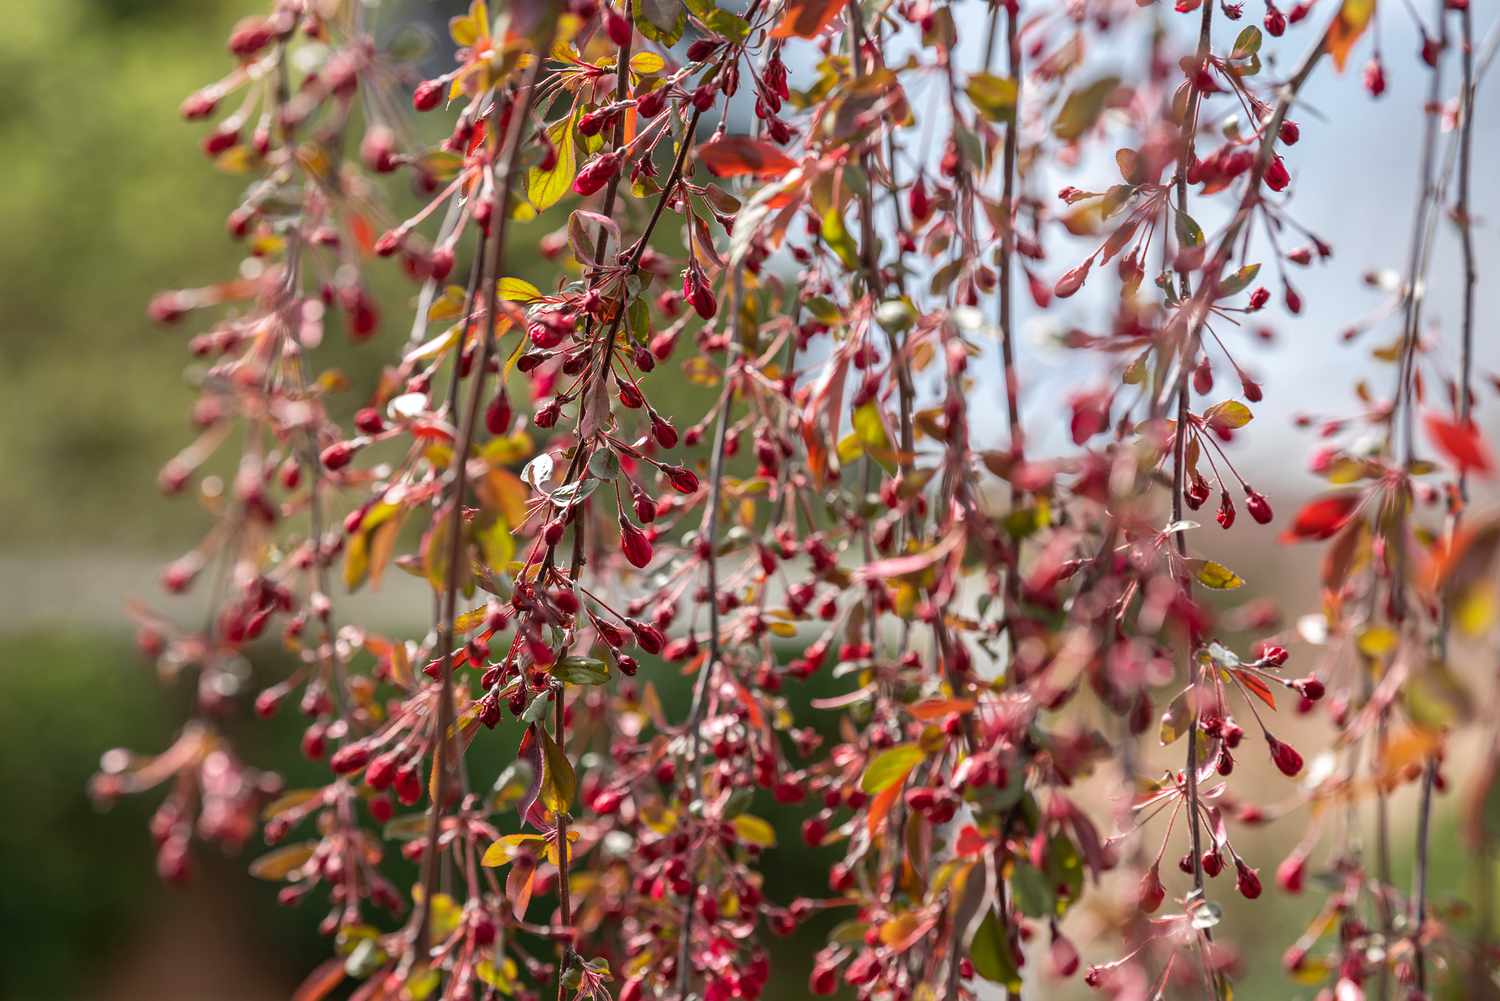 Zweige des Trauerapfelbaums mit kleinen roten Früchten und gelben Blättern in Nahaufnahme